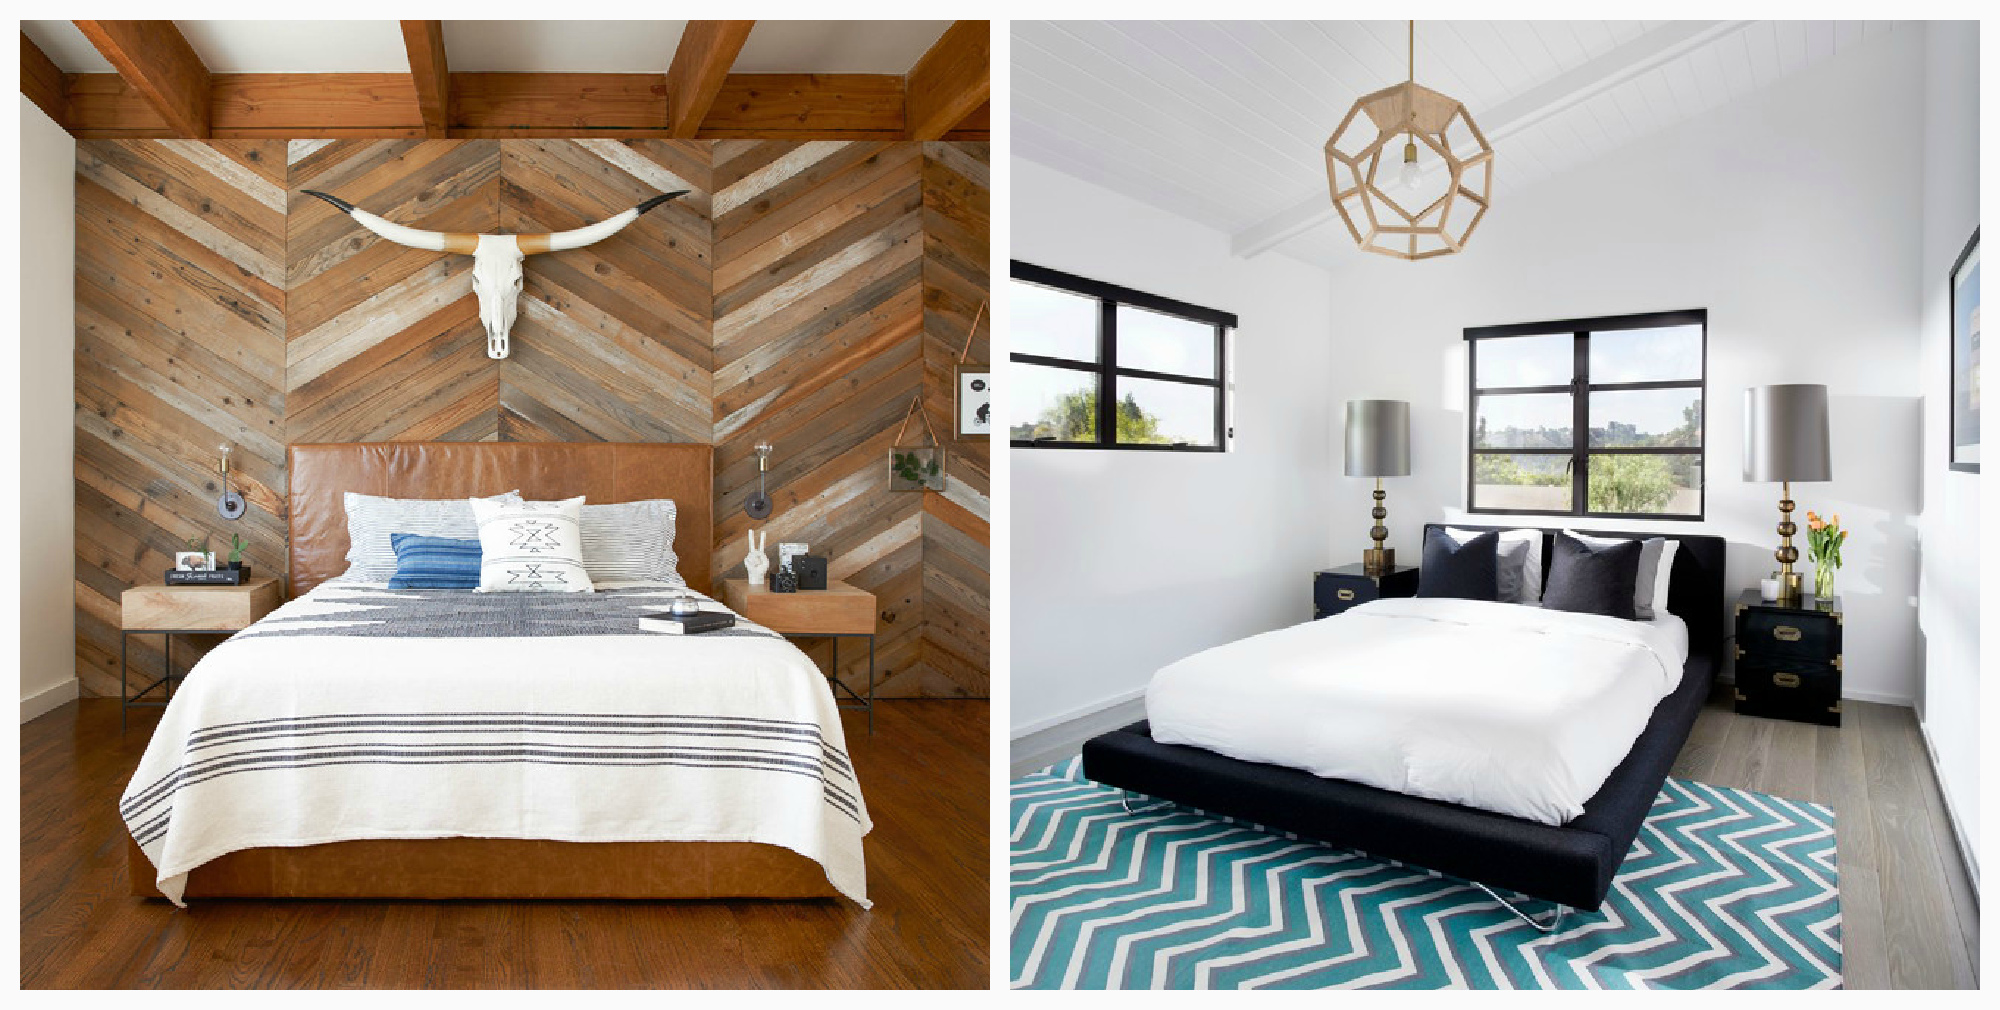 Идеи интерьера спальни: 8 причудливых орнаментов